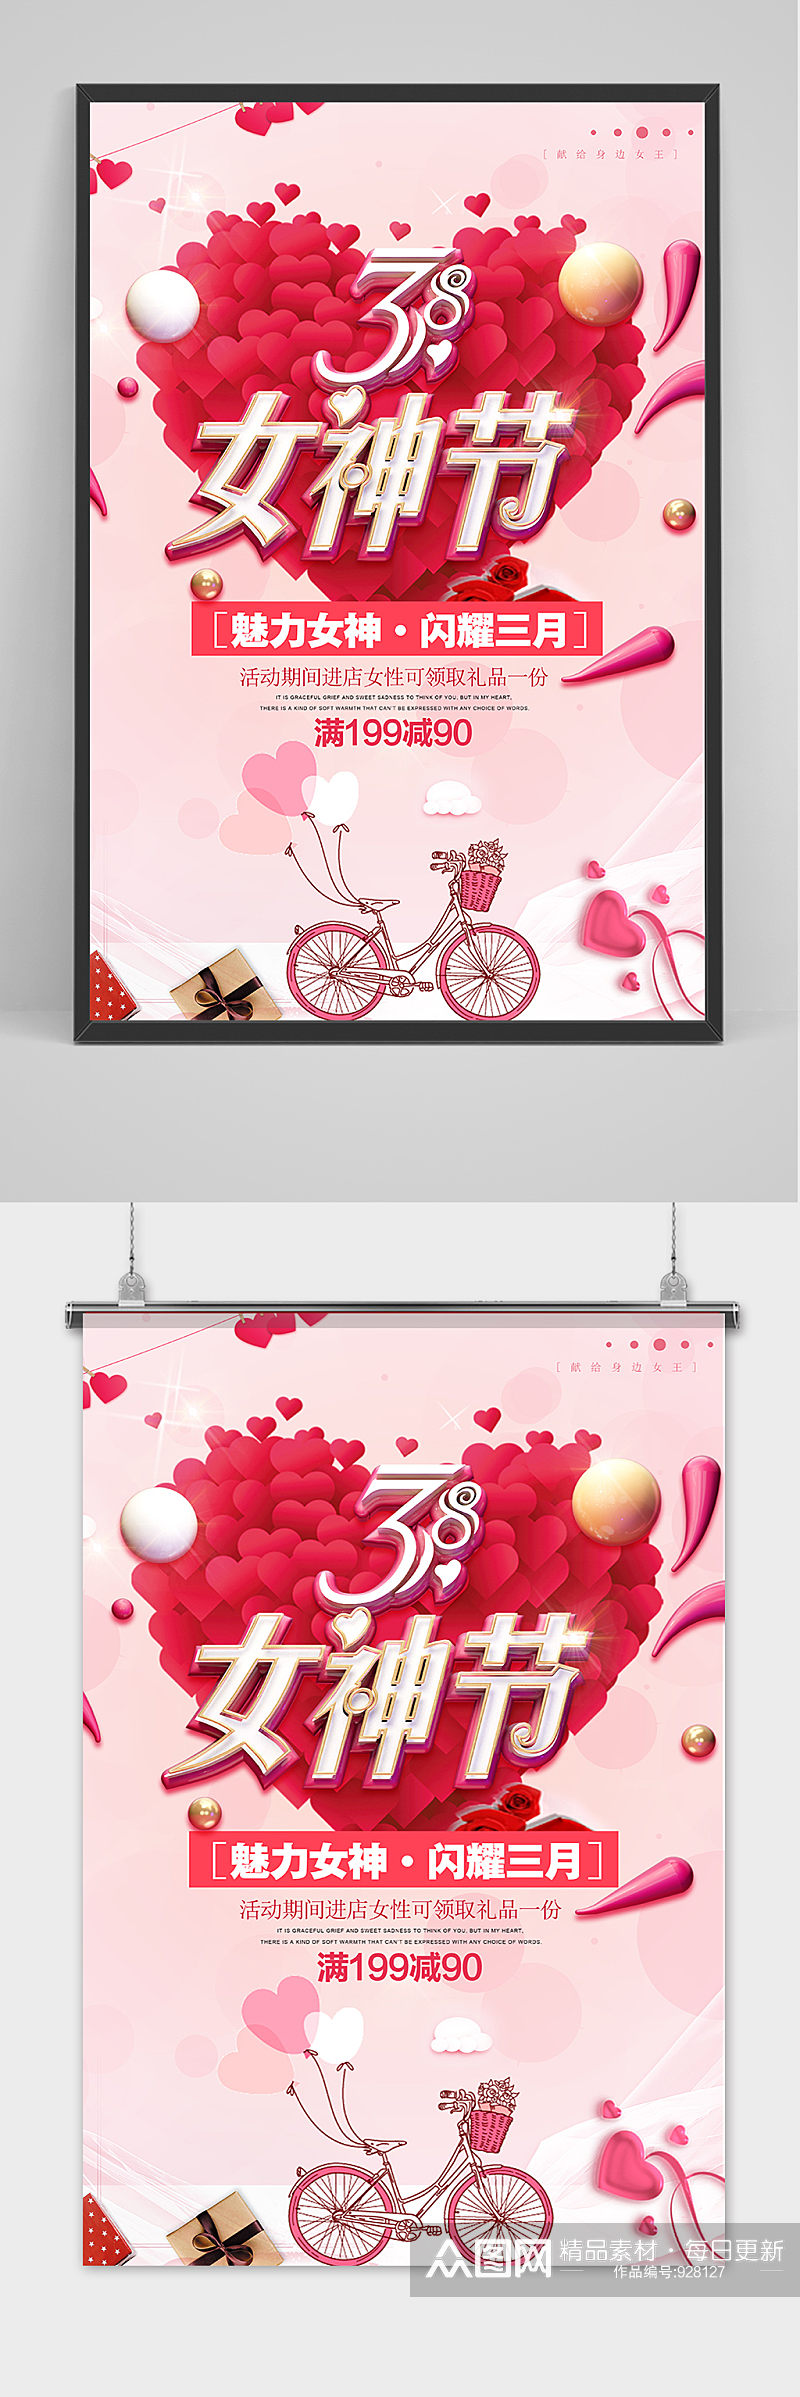 粉色爱心妇女节魅力女神节三月促销海报素材